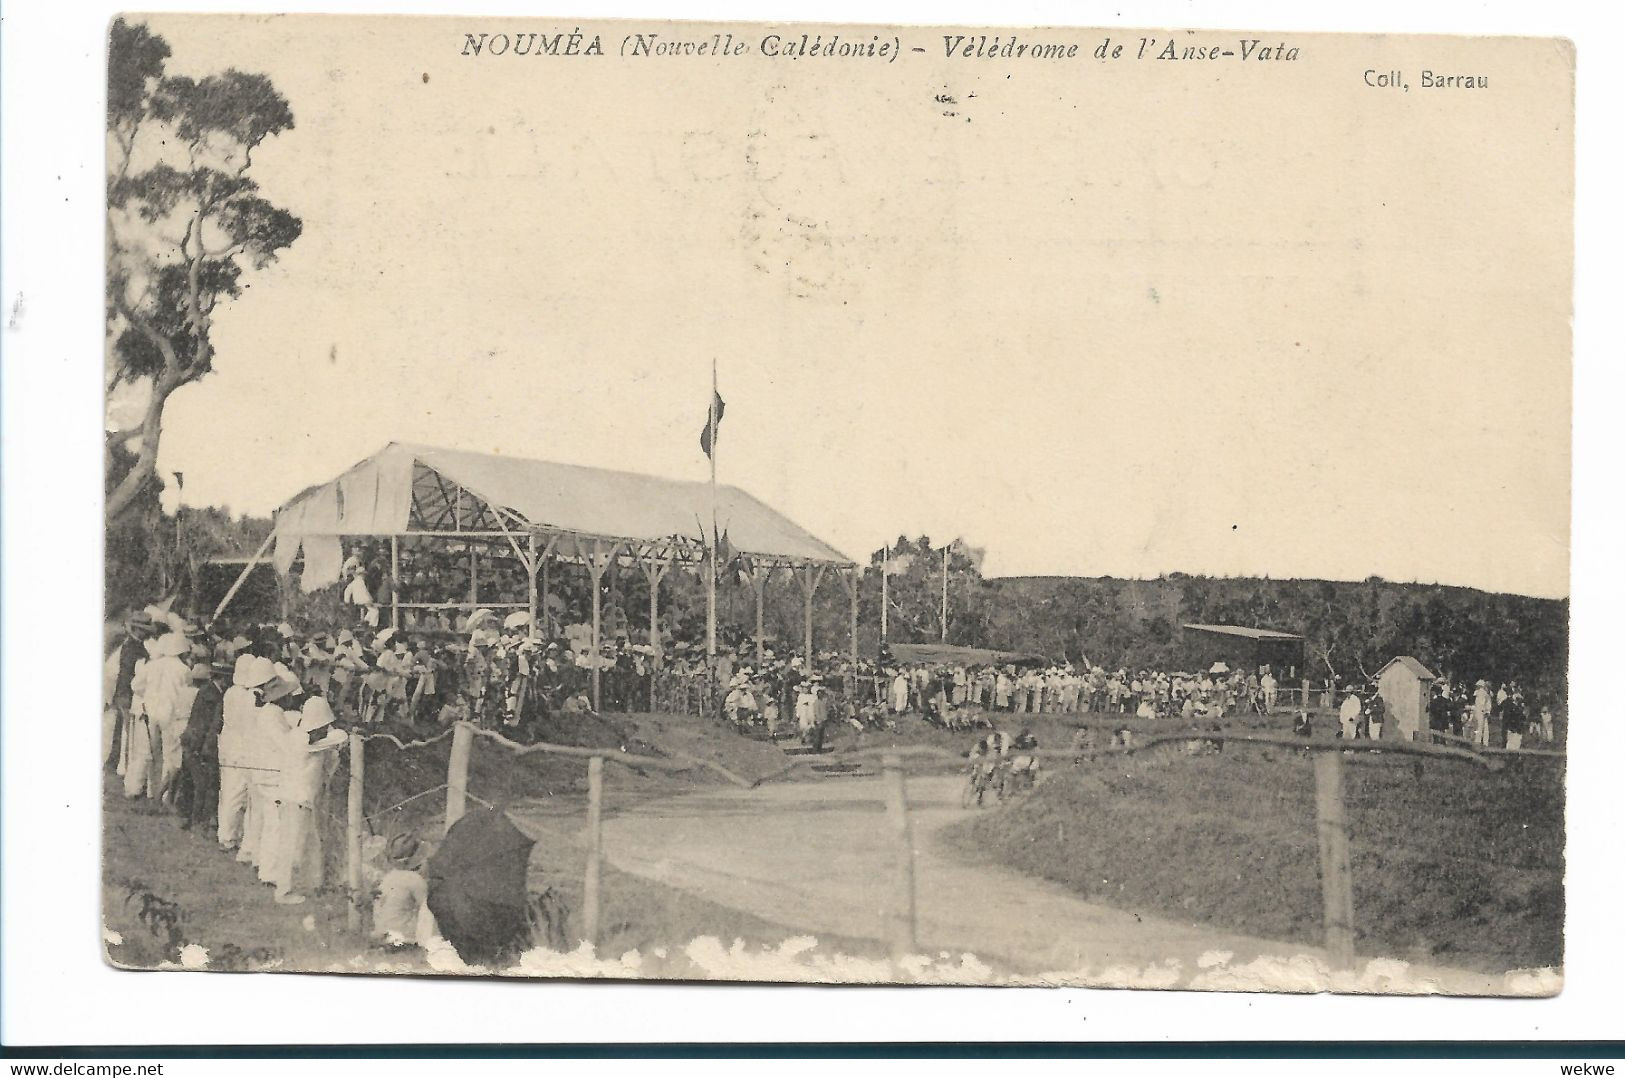 FDO018 / Neukaledonien - 1909 Auf Ansichtskarte Mit Kagu-Vogekmarken (11) - Briefe U. Dokumente